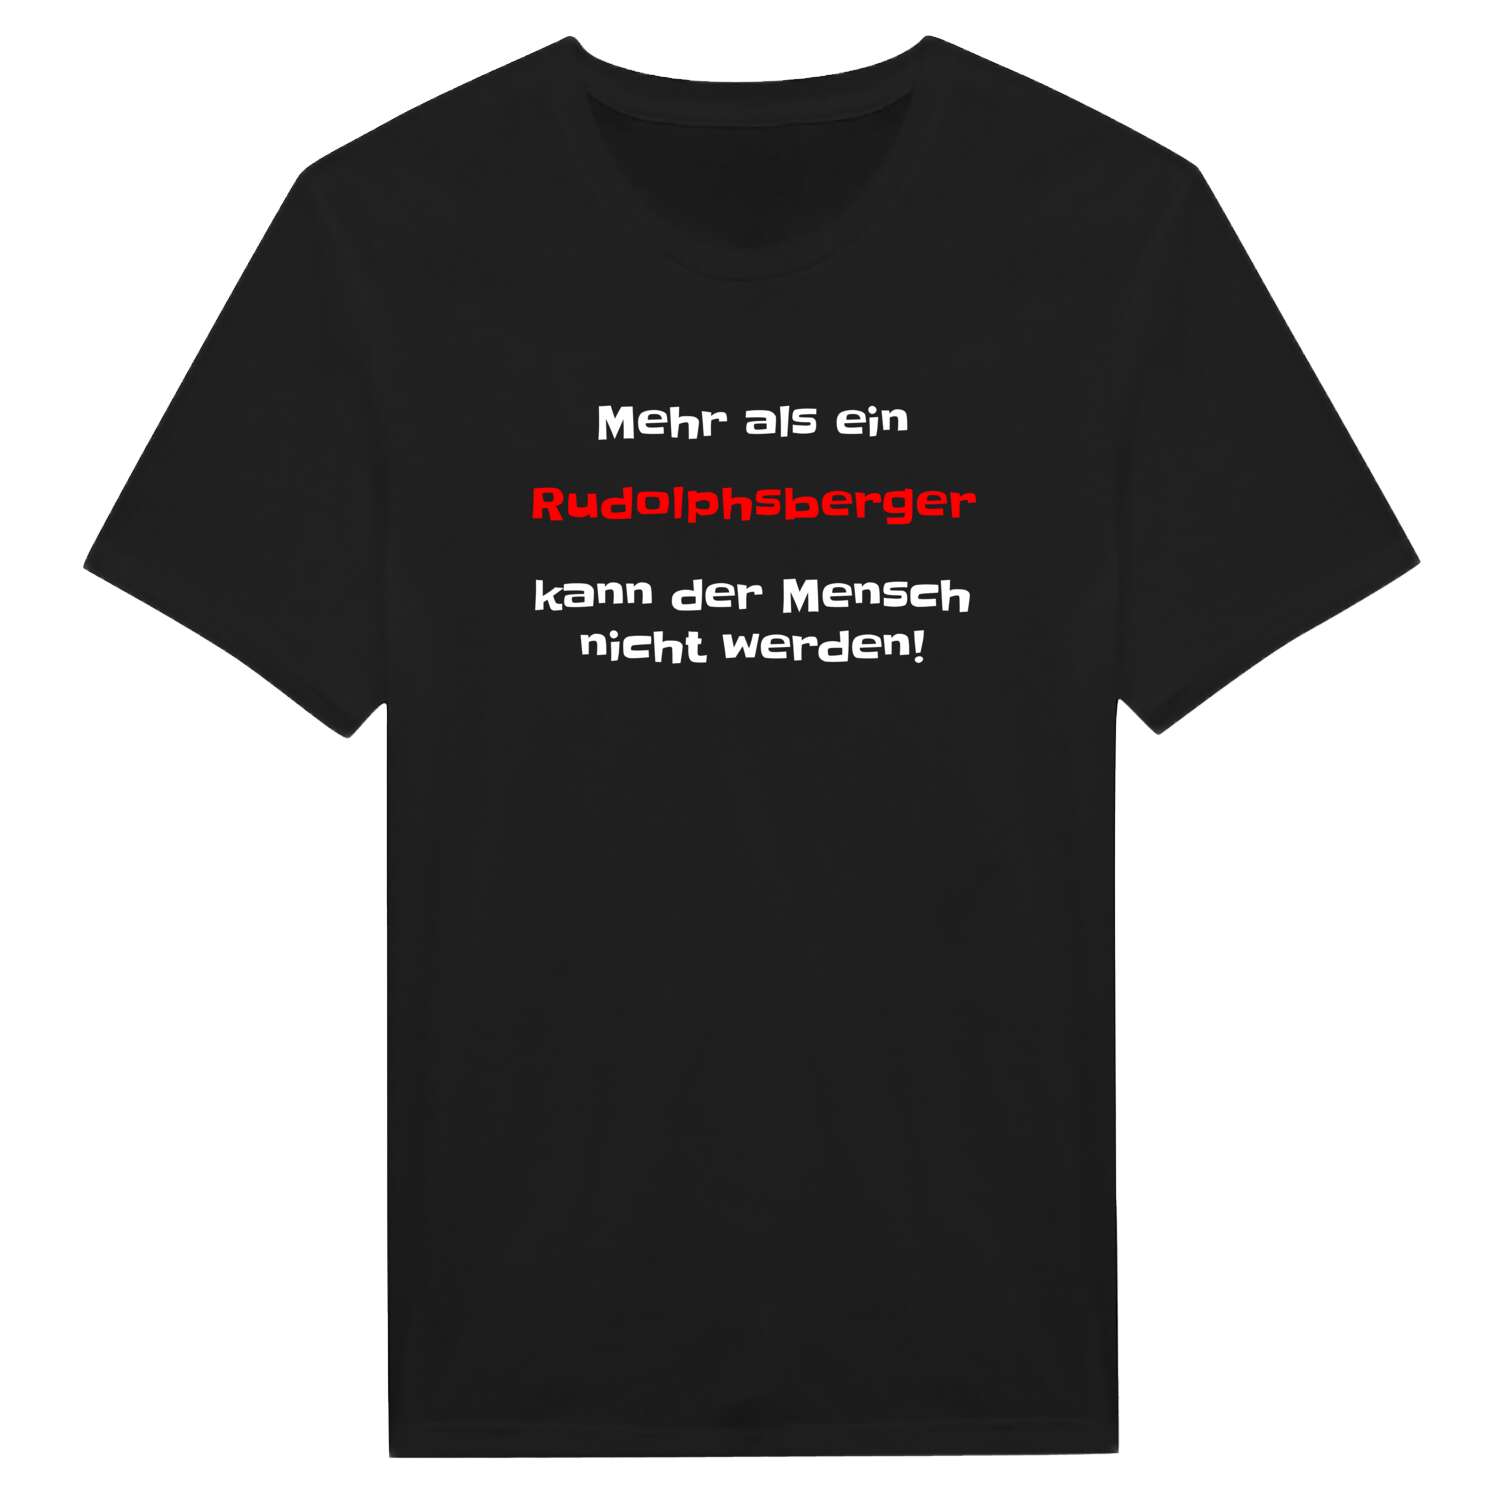 Rudolphsberg T-Shirt »Mehr als ein«